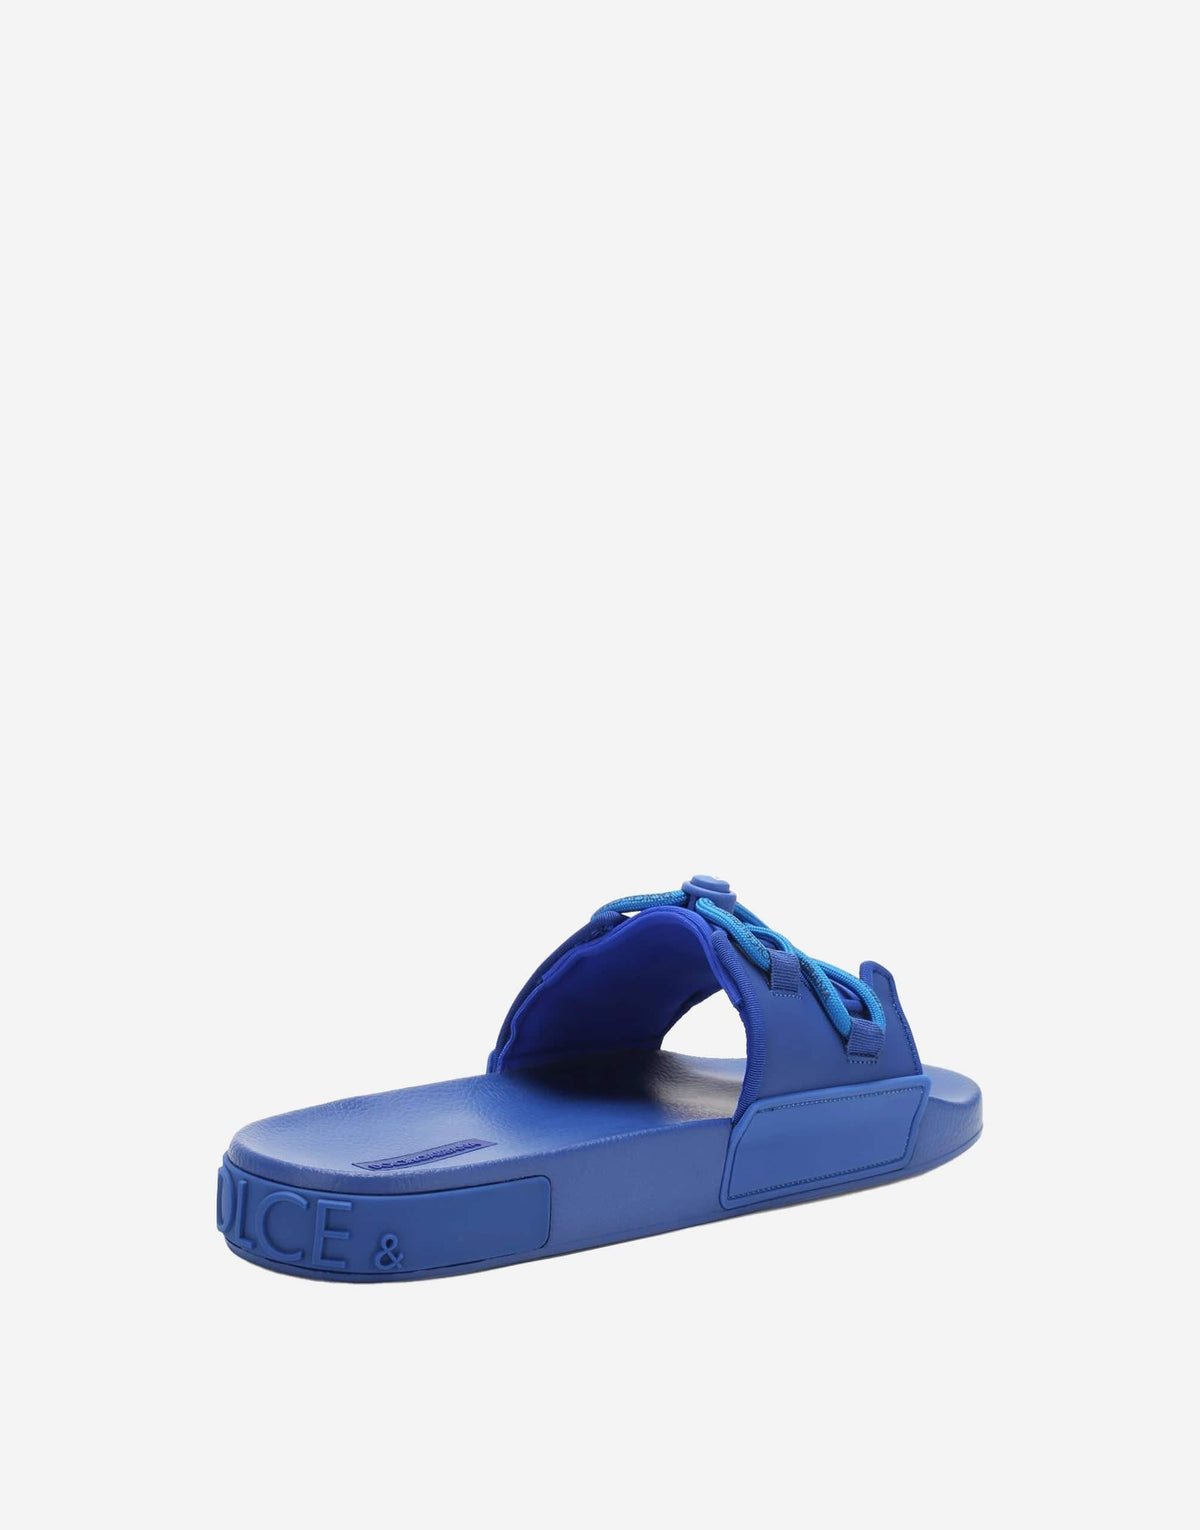 Dolce & Gabbana Blue Stretch Rubber Sandals Slides Slip On Shoes